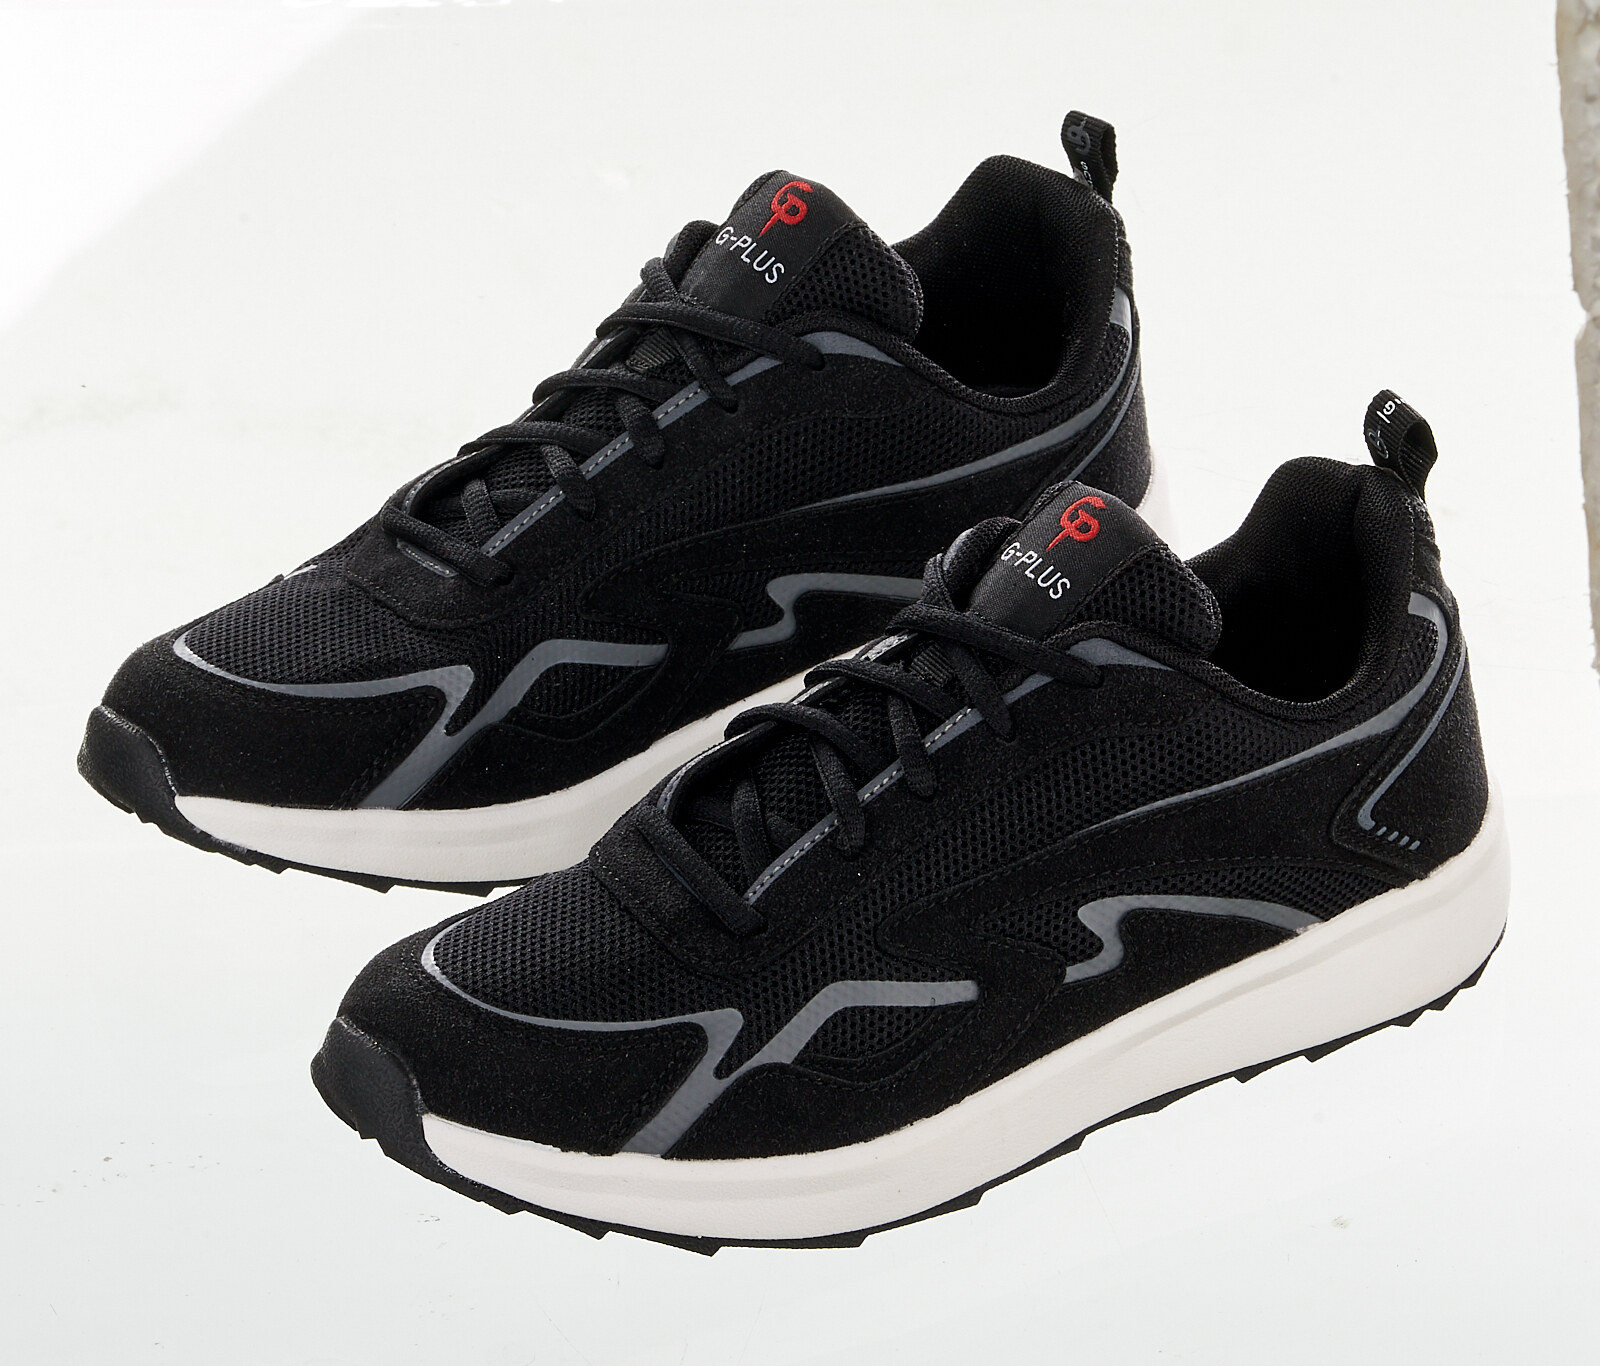 G-PLUS Sneaker รุ่น PM009 รองเท้าแฟชั่น รองเท้าวิ่ง รองเท้าสเน็กเกอร์ รองเท้าผ้าใบ รองเท้าผู้ชาย NEW COLLECTION 2020 (MEN)